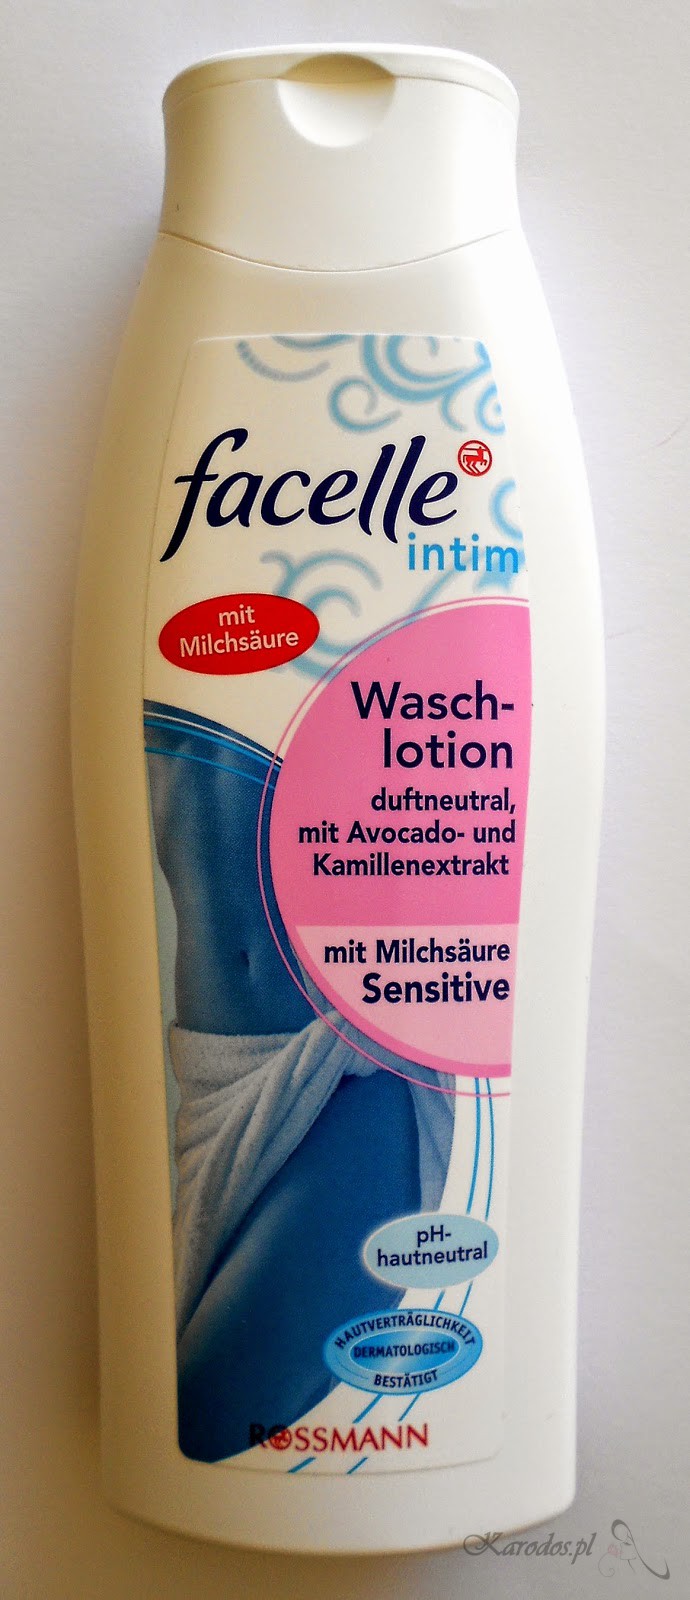 Rossmann, Facelle Intim, Waschlotion Sensitive - Płyn do higieny intymnej